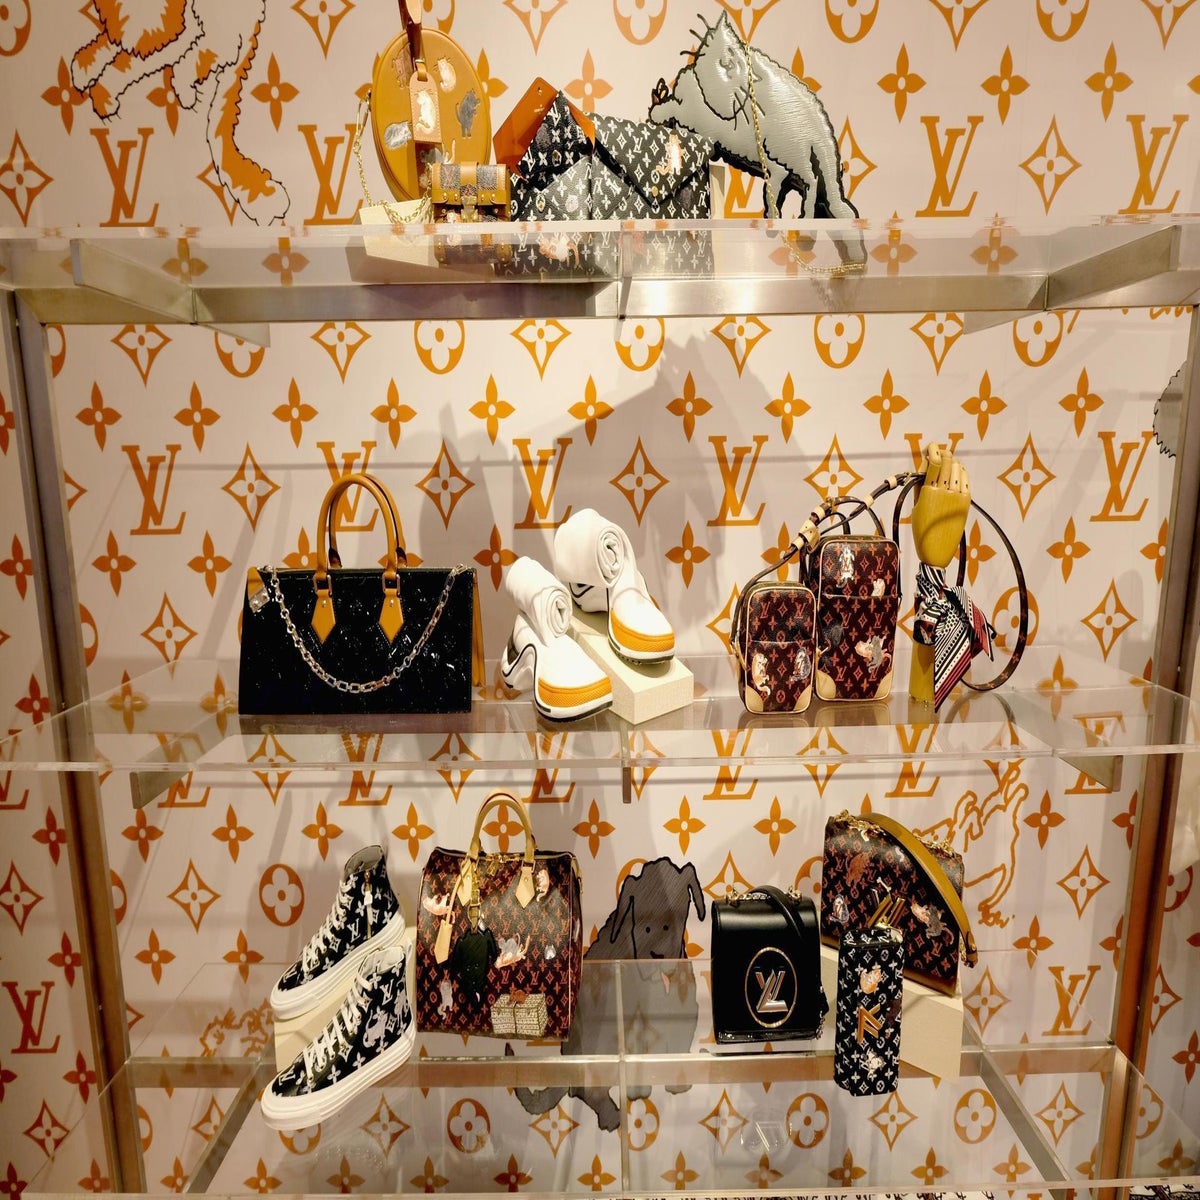 Louis Vuitton x Grace Coddington Capsule Collection